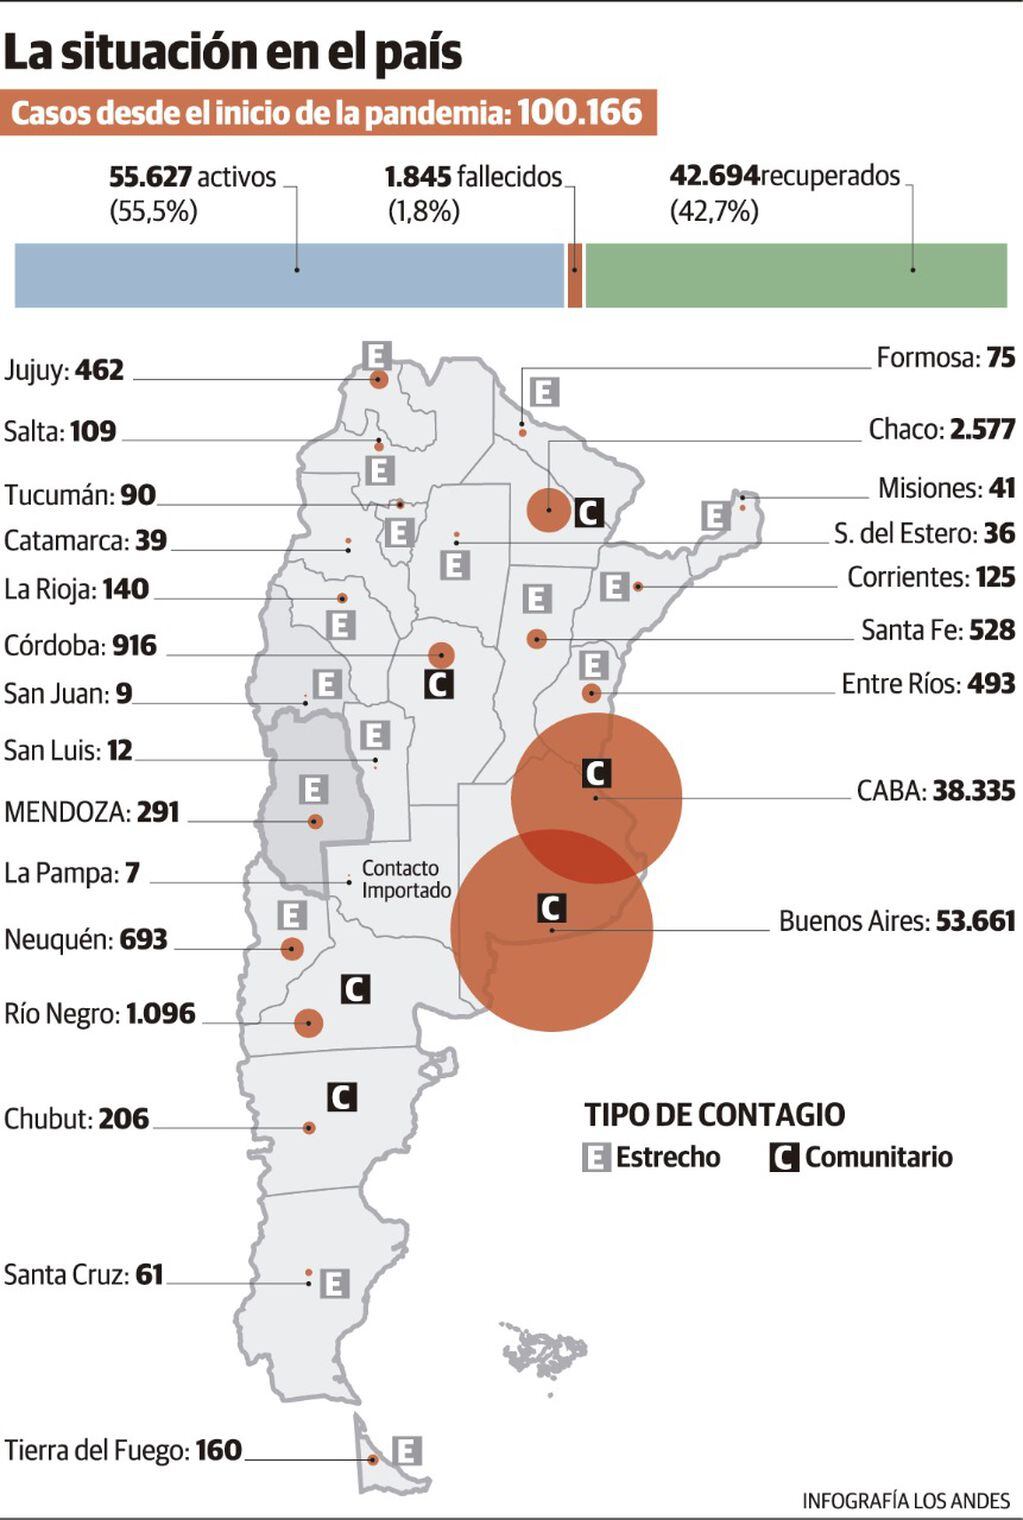 El Ministerio de Salud de la Nación informó esta tarde que Argentina superó la barrera de los 100.000 contagiados por Covid-19.